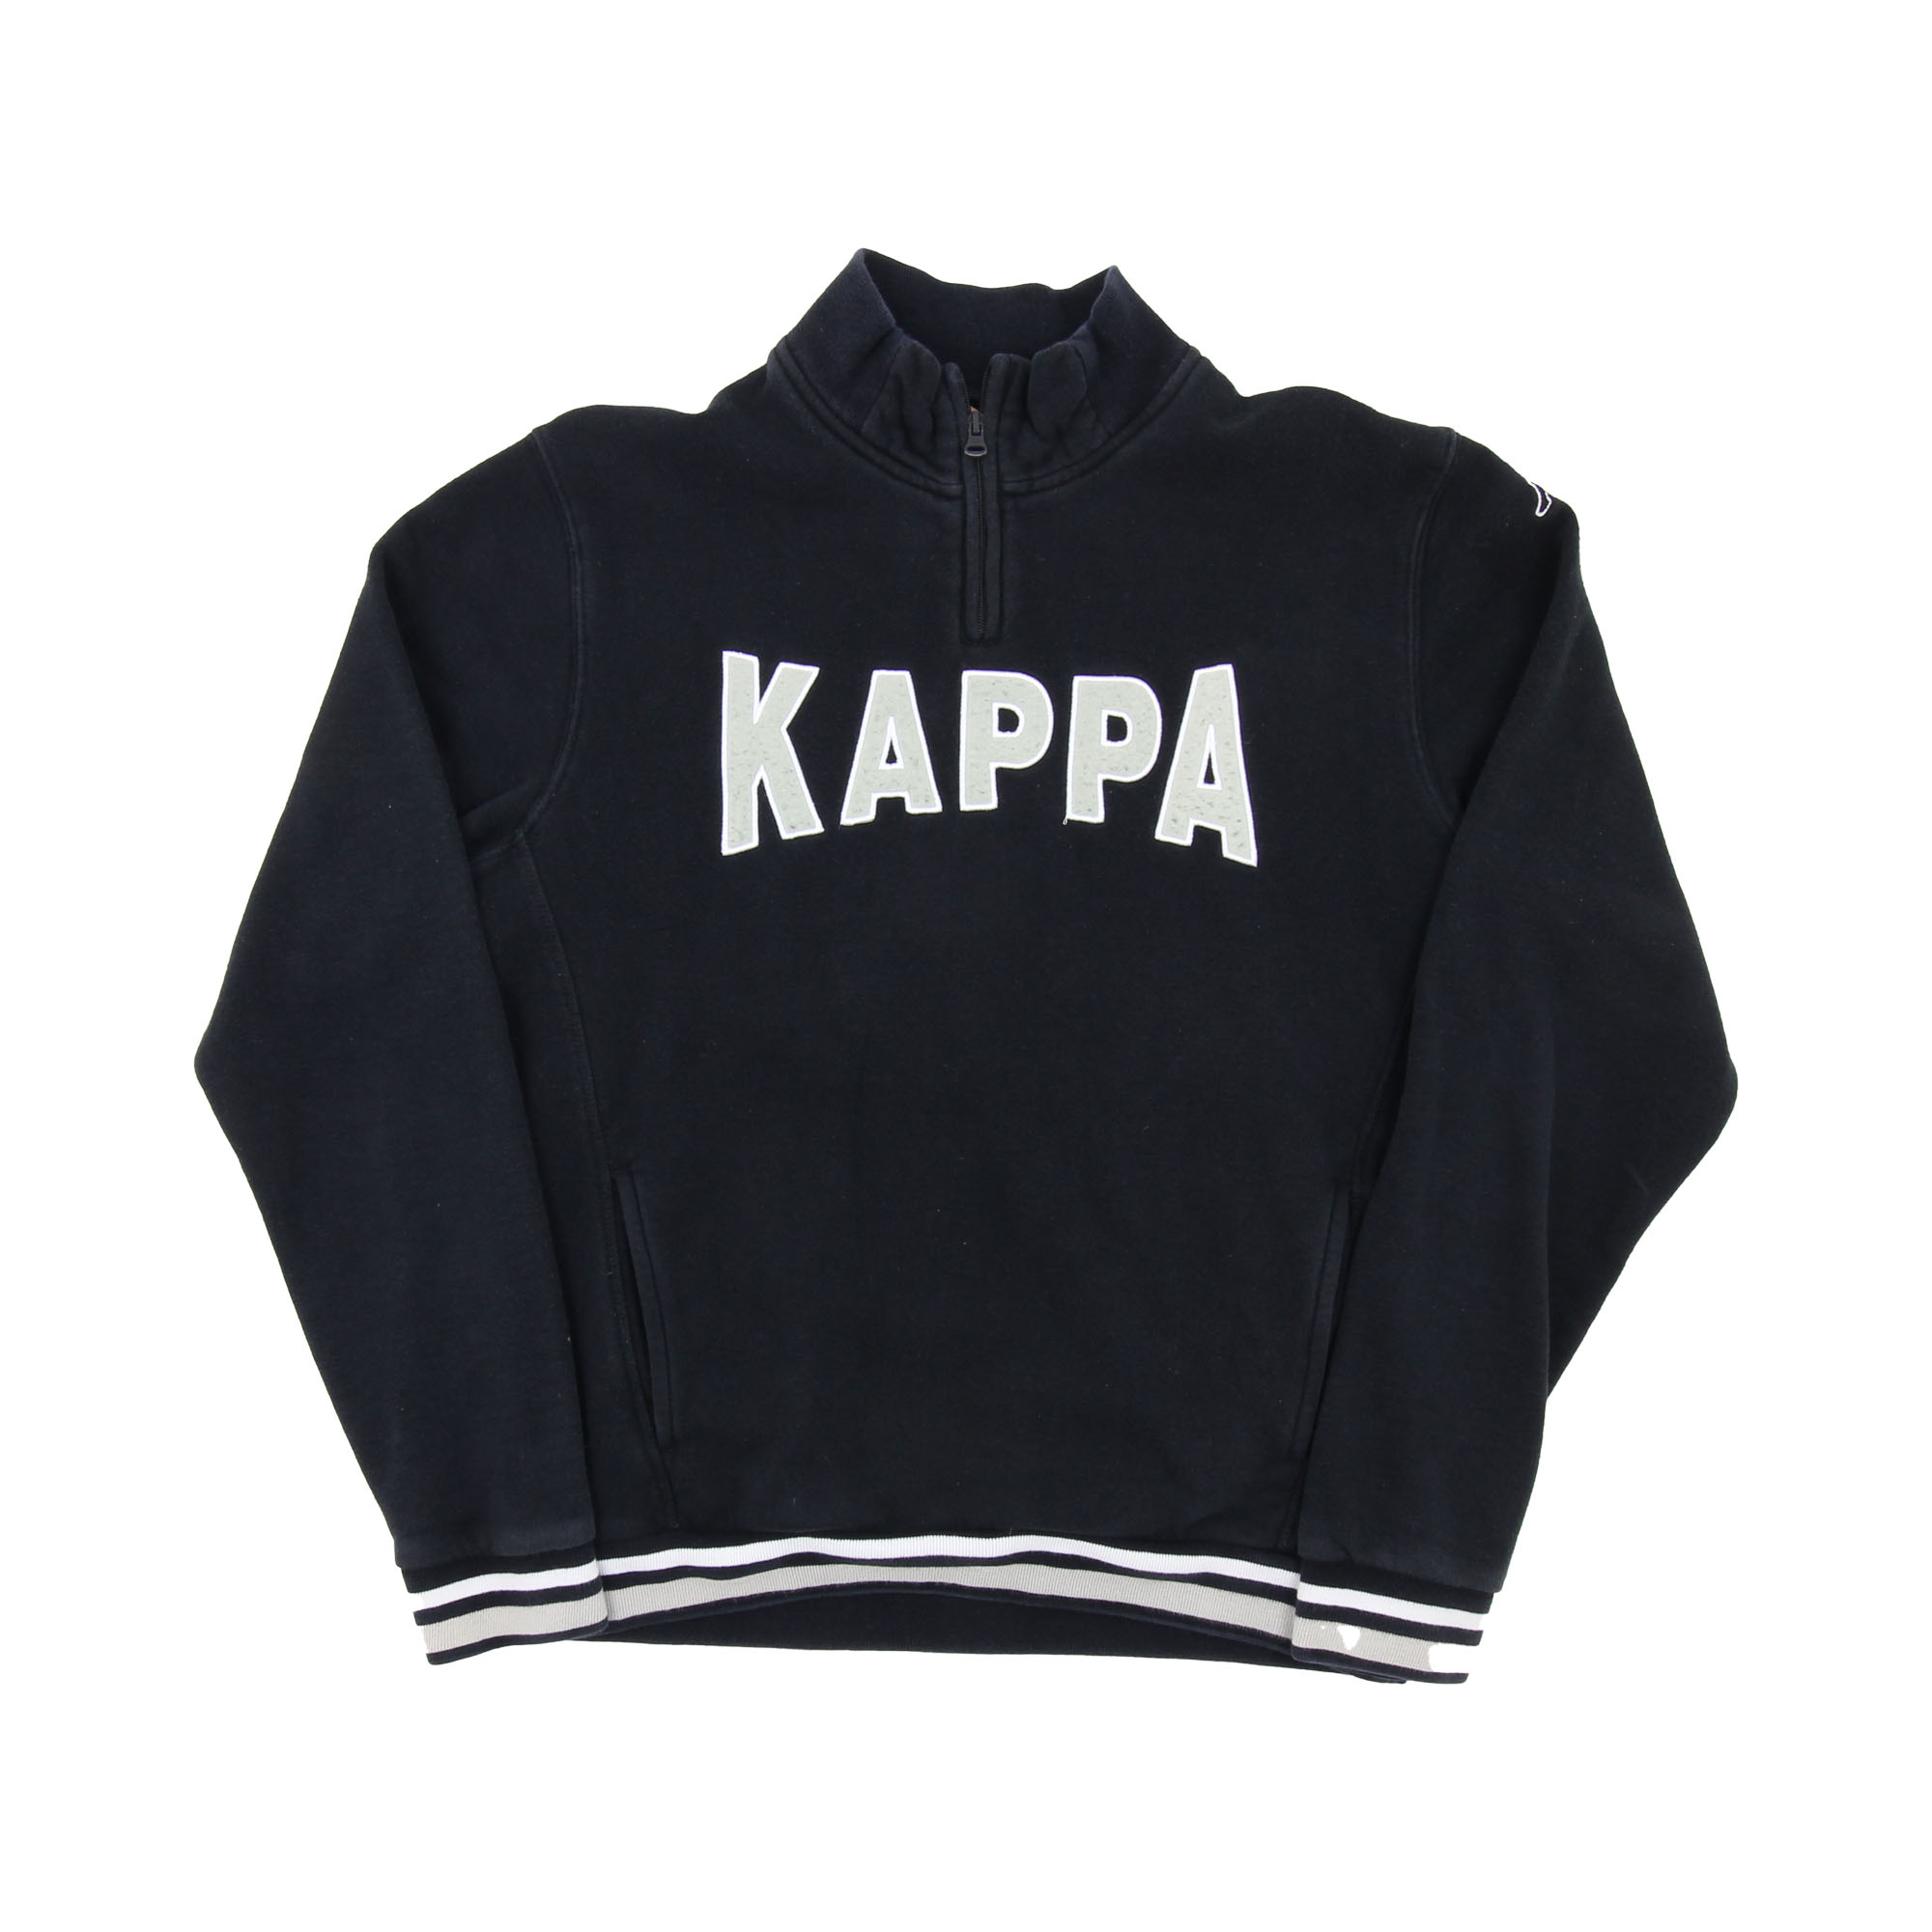 Kappa Sweatshirt Black -  L